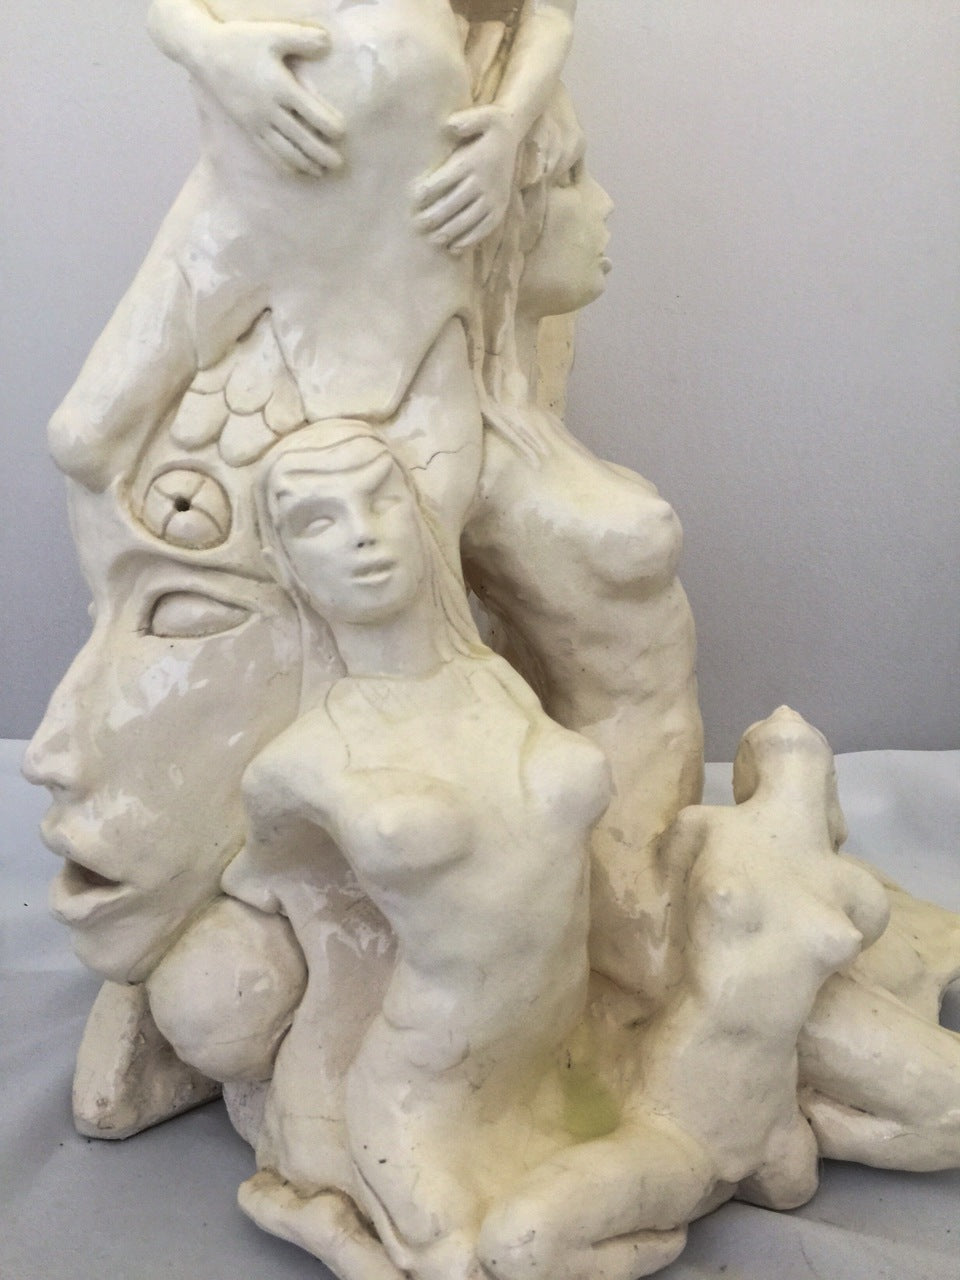 Porcelain Figurative Sculpture "Cycles"